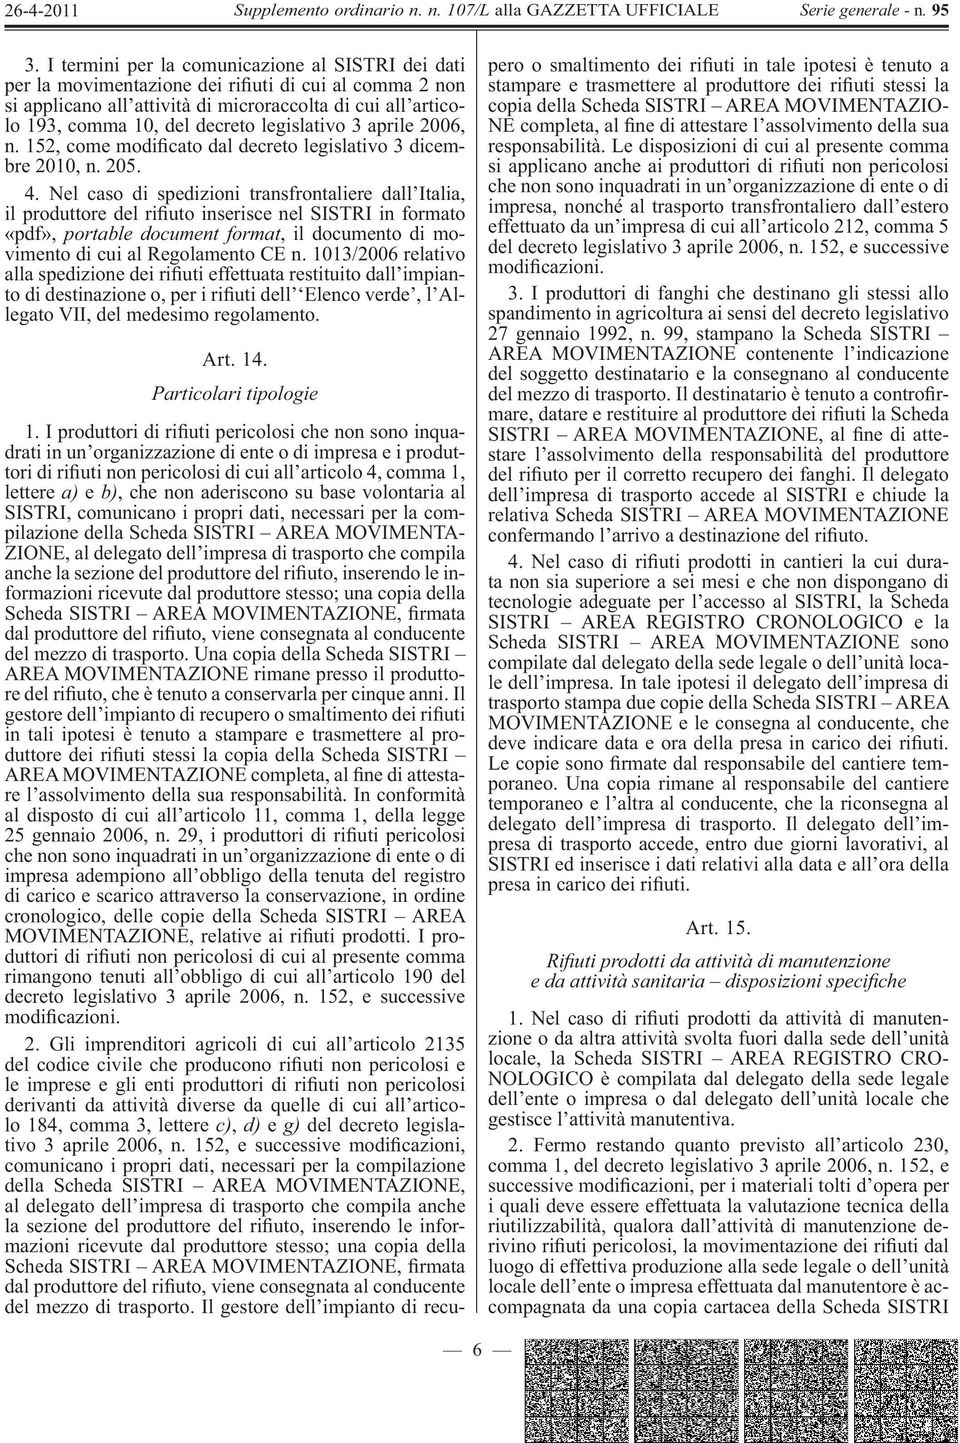 Nel caso di spedizioni transfrontaliere dall Italia, il produttore del ri uto inserisce nel SISTRI in formato «pdf», portable document format, il documento di movimento di cui al Regolamento CE n.